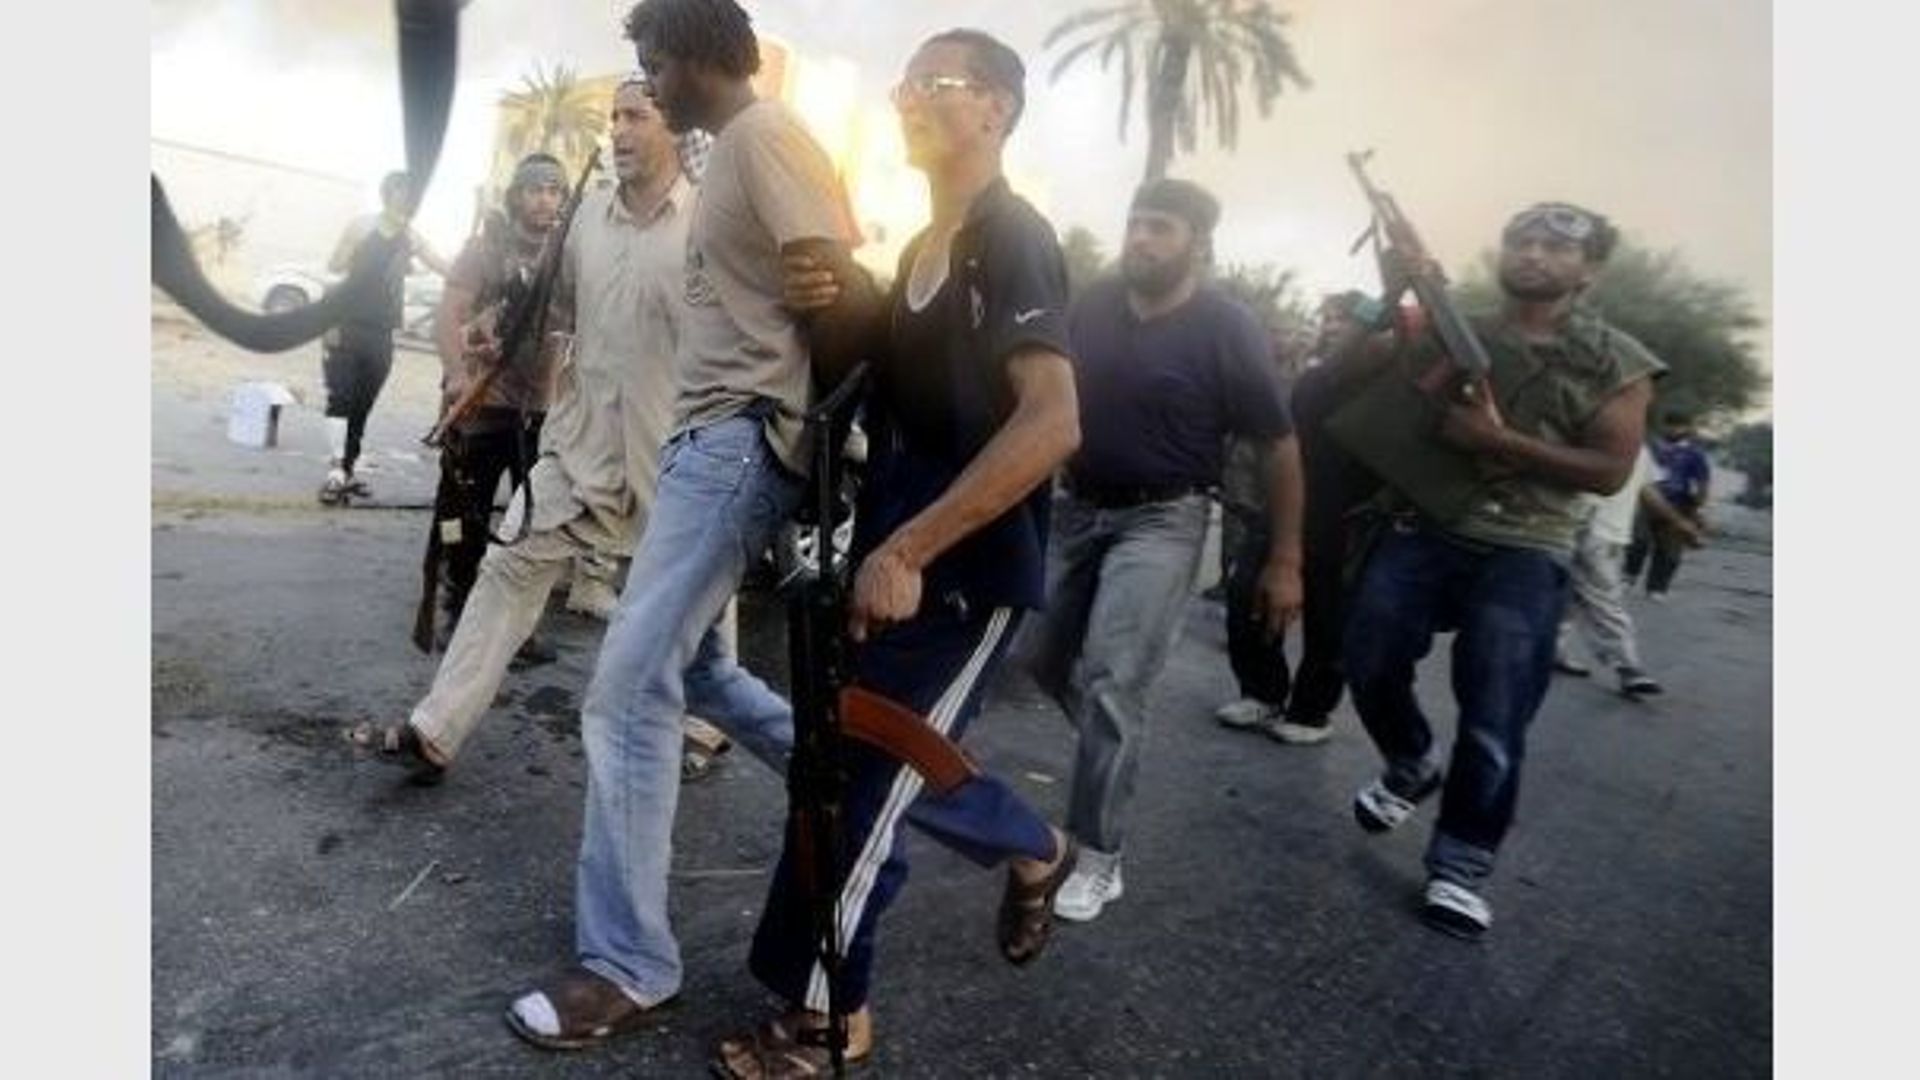 Des rebelles libyens arrêtent un combattant pro-Kadhafi, le 25 août 2011 à Abou Salim, au sud de Tripoli 